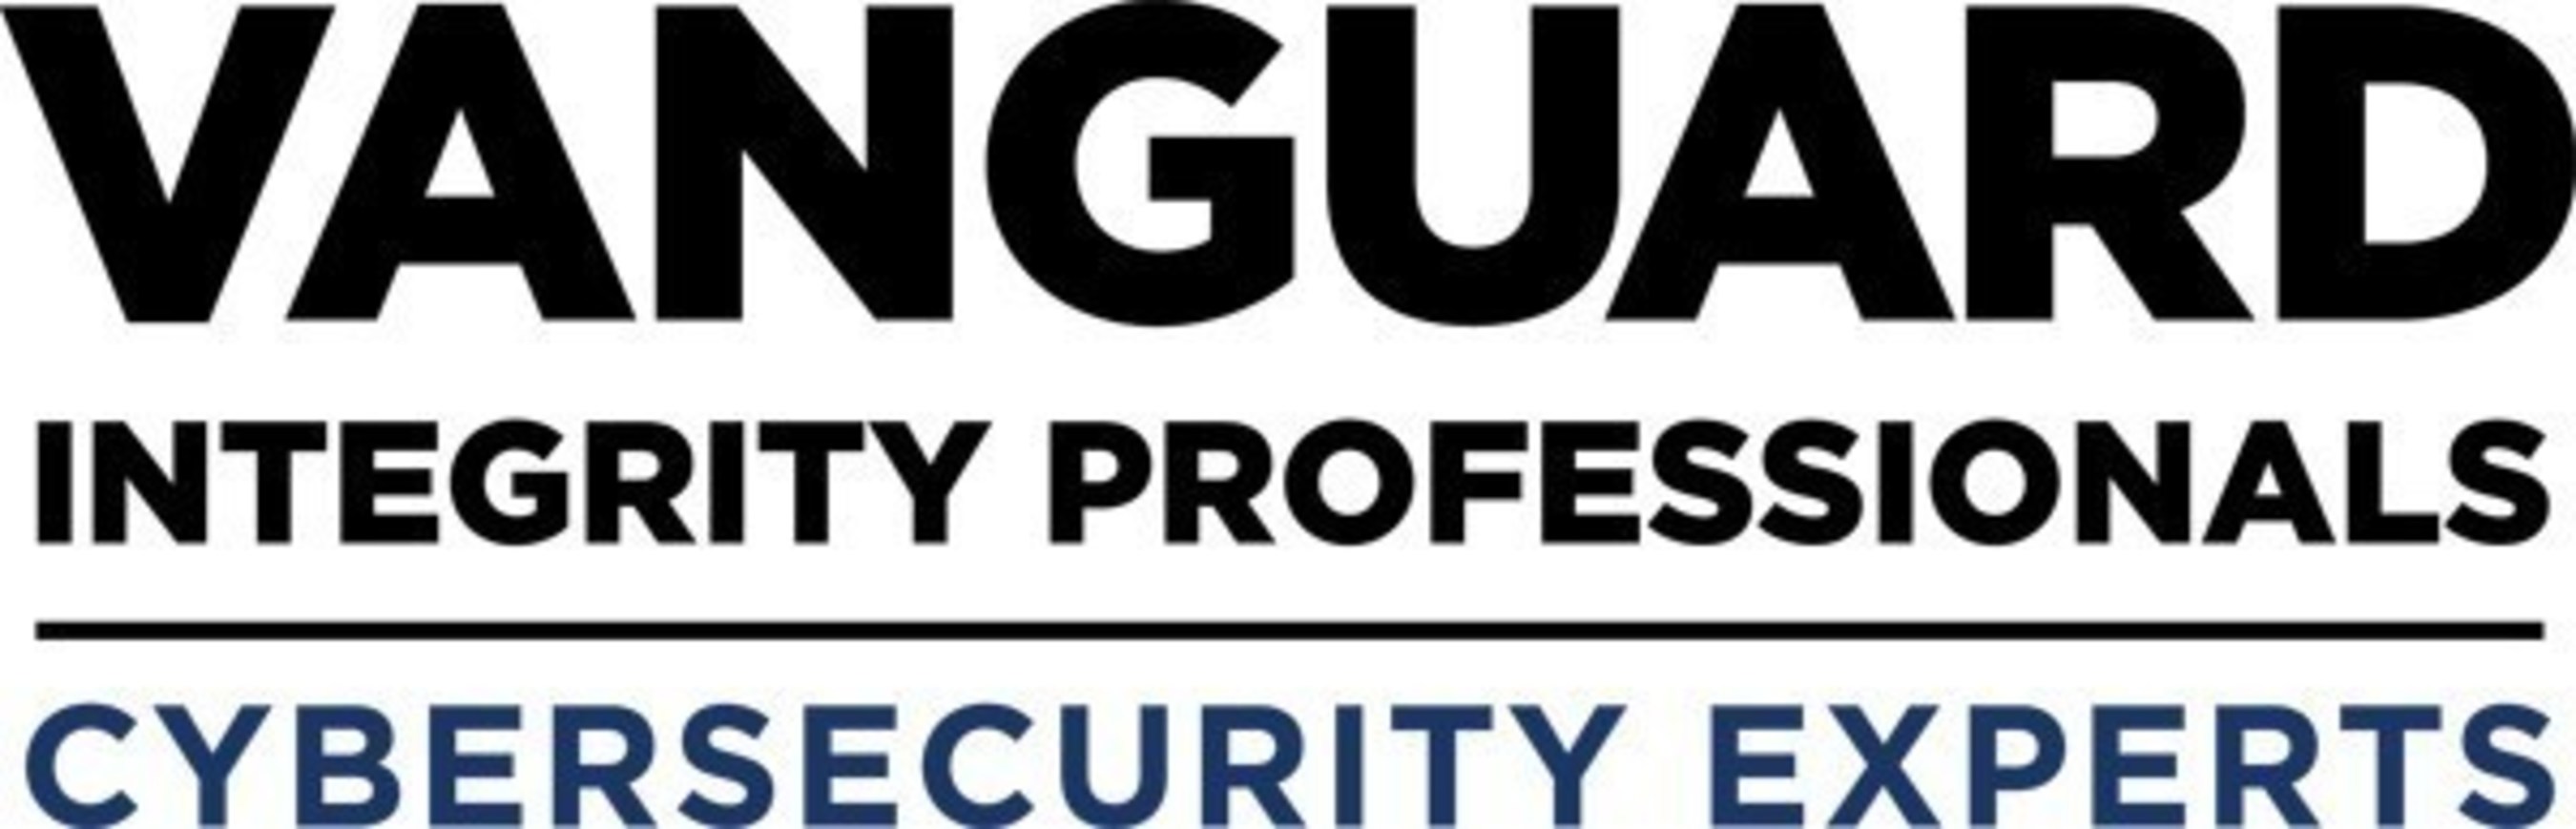 www.go2vanguard.com (PRNewsFoto/Vanguard Integrity Professionals)